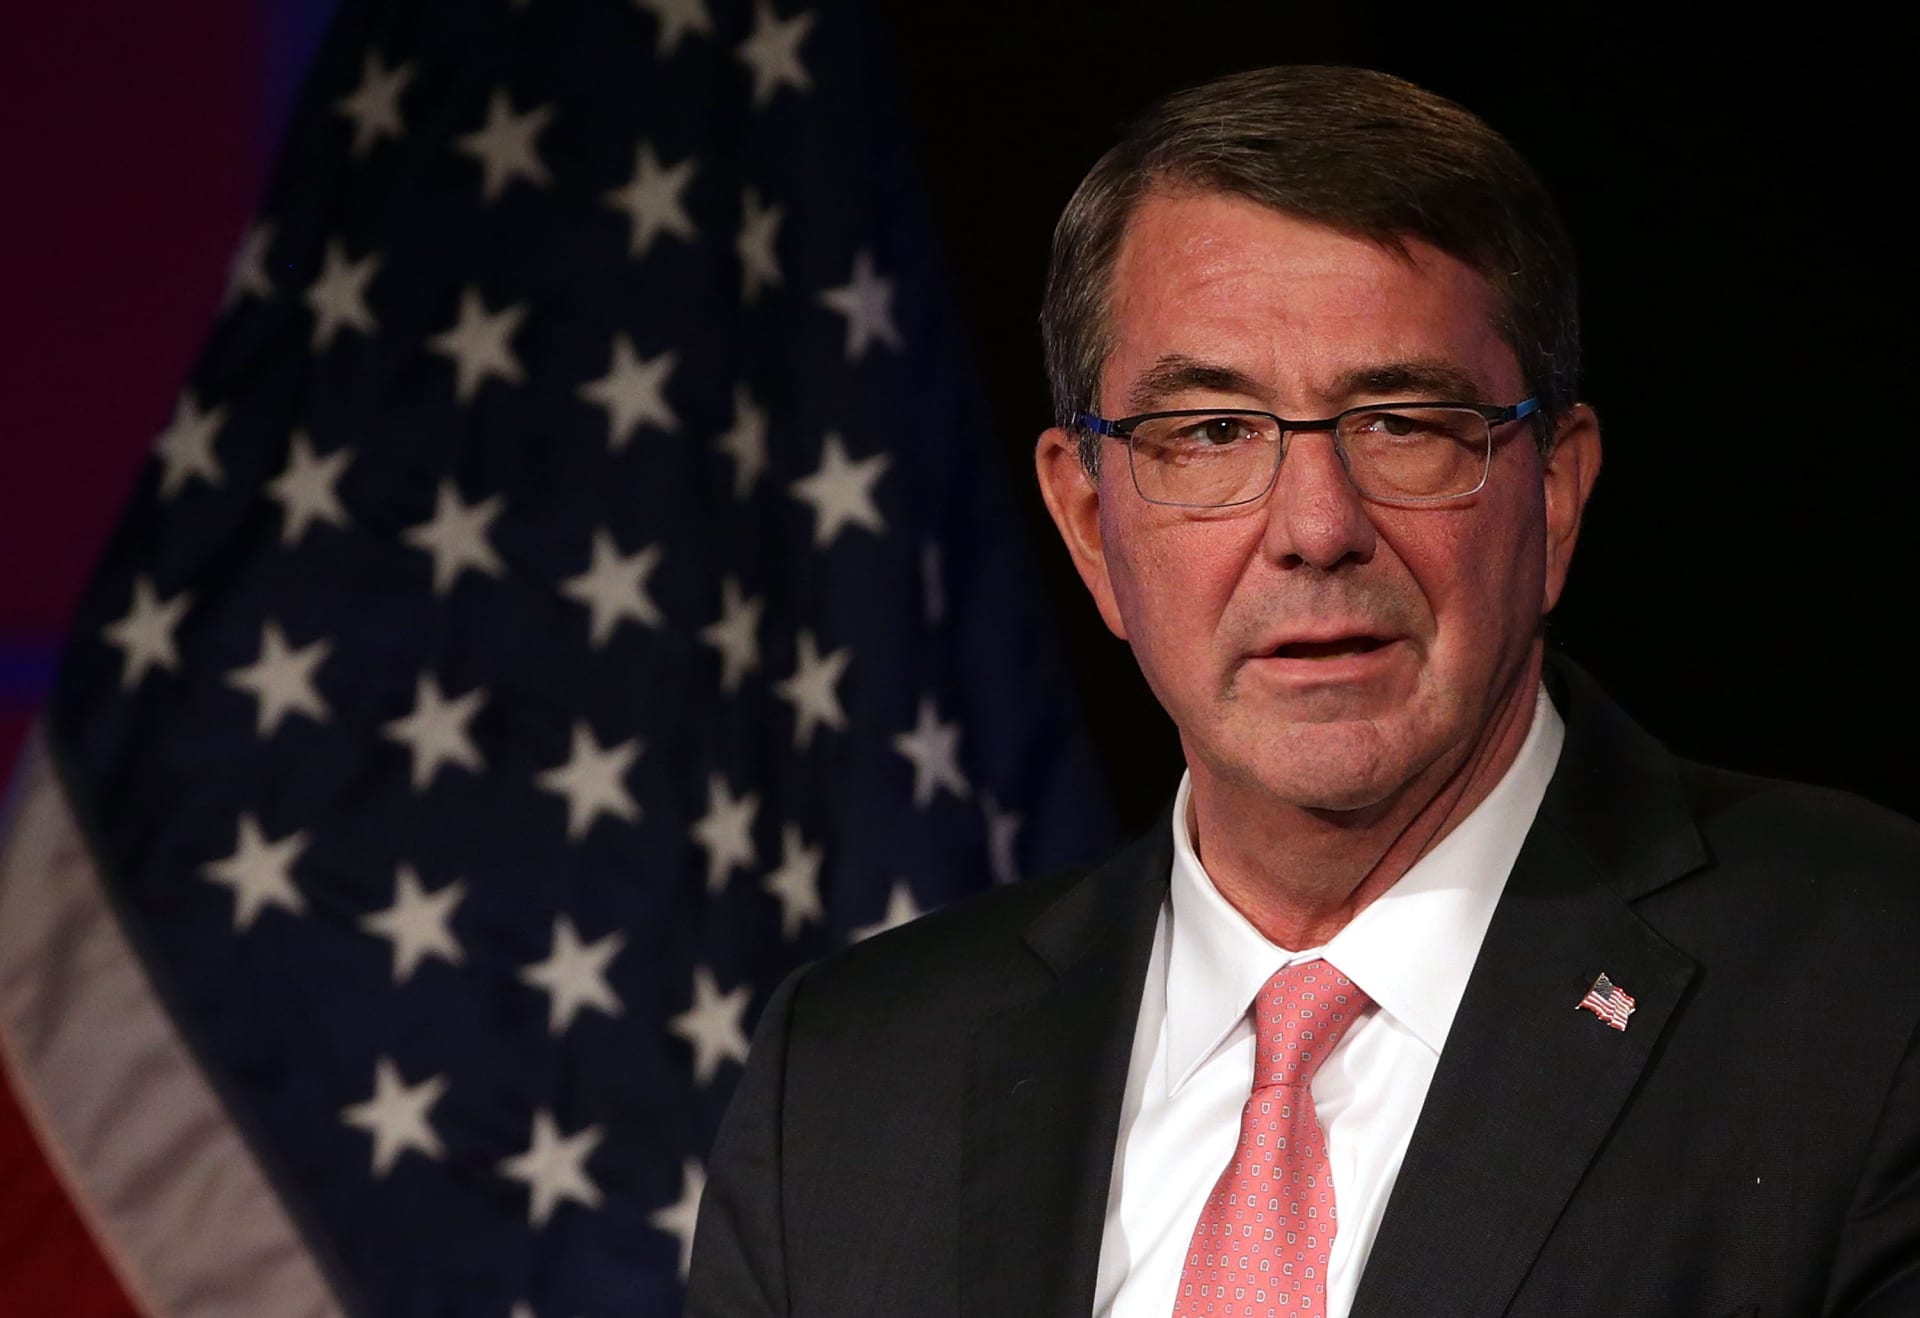 وزير الدفاع الأمريكي يعلن عن تشكيل "قوة استهداف متخصصة للتدخل السريع" لإجراء عمليات إضافية في العراق